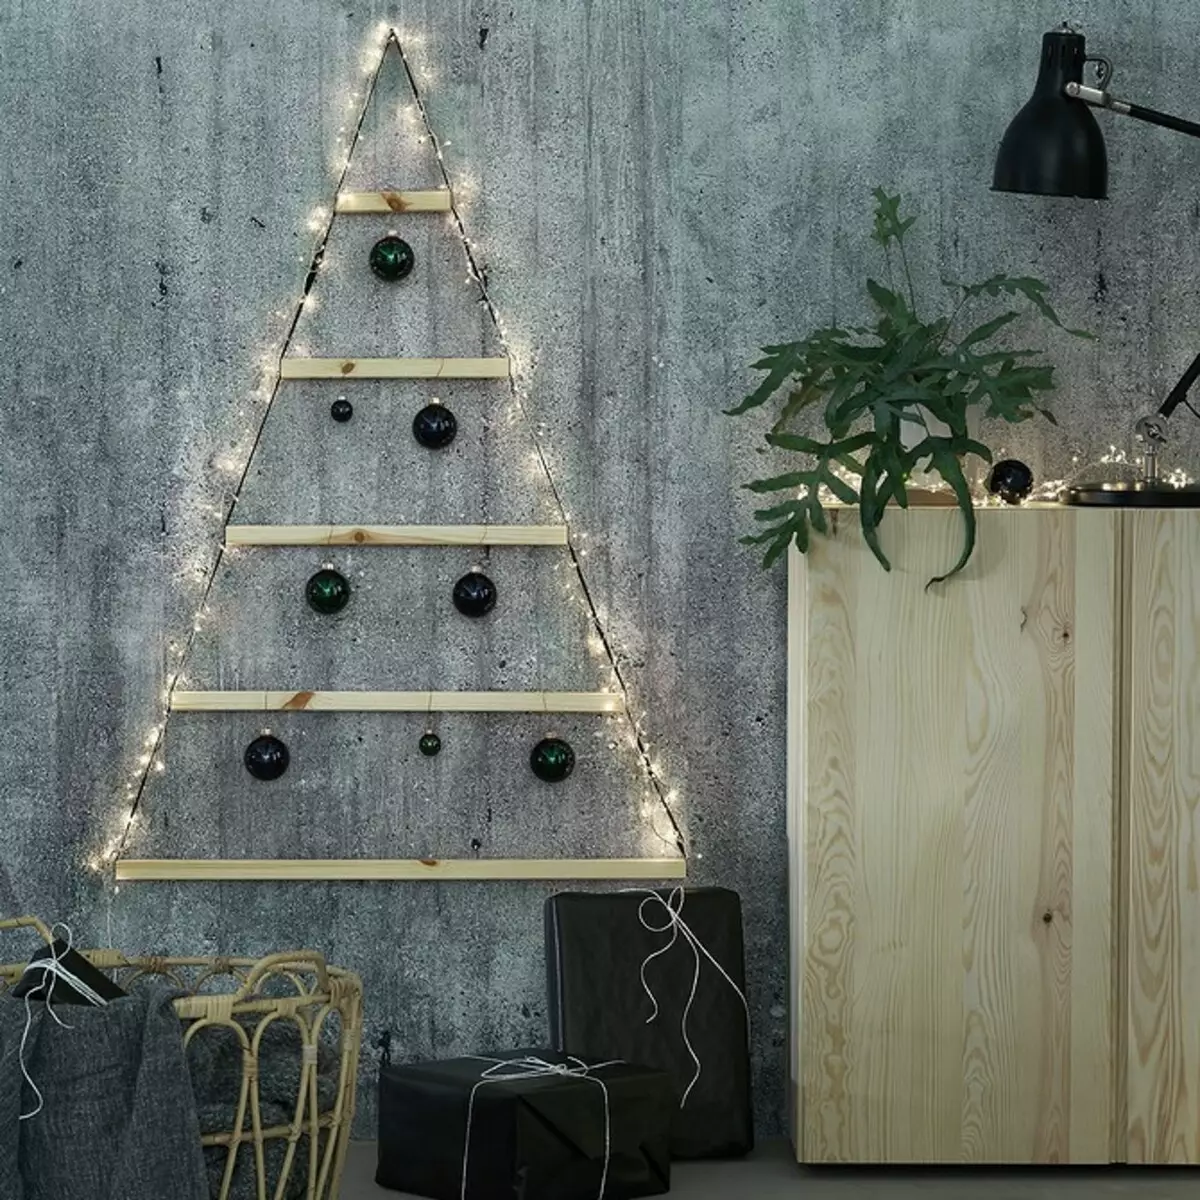 Podeu triar: 9 decoracions de Nadal d'Ikea 1312_17